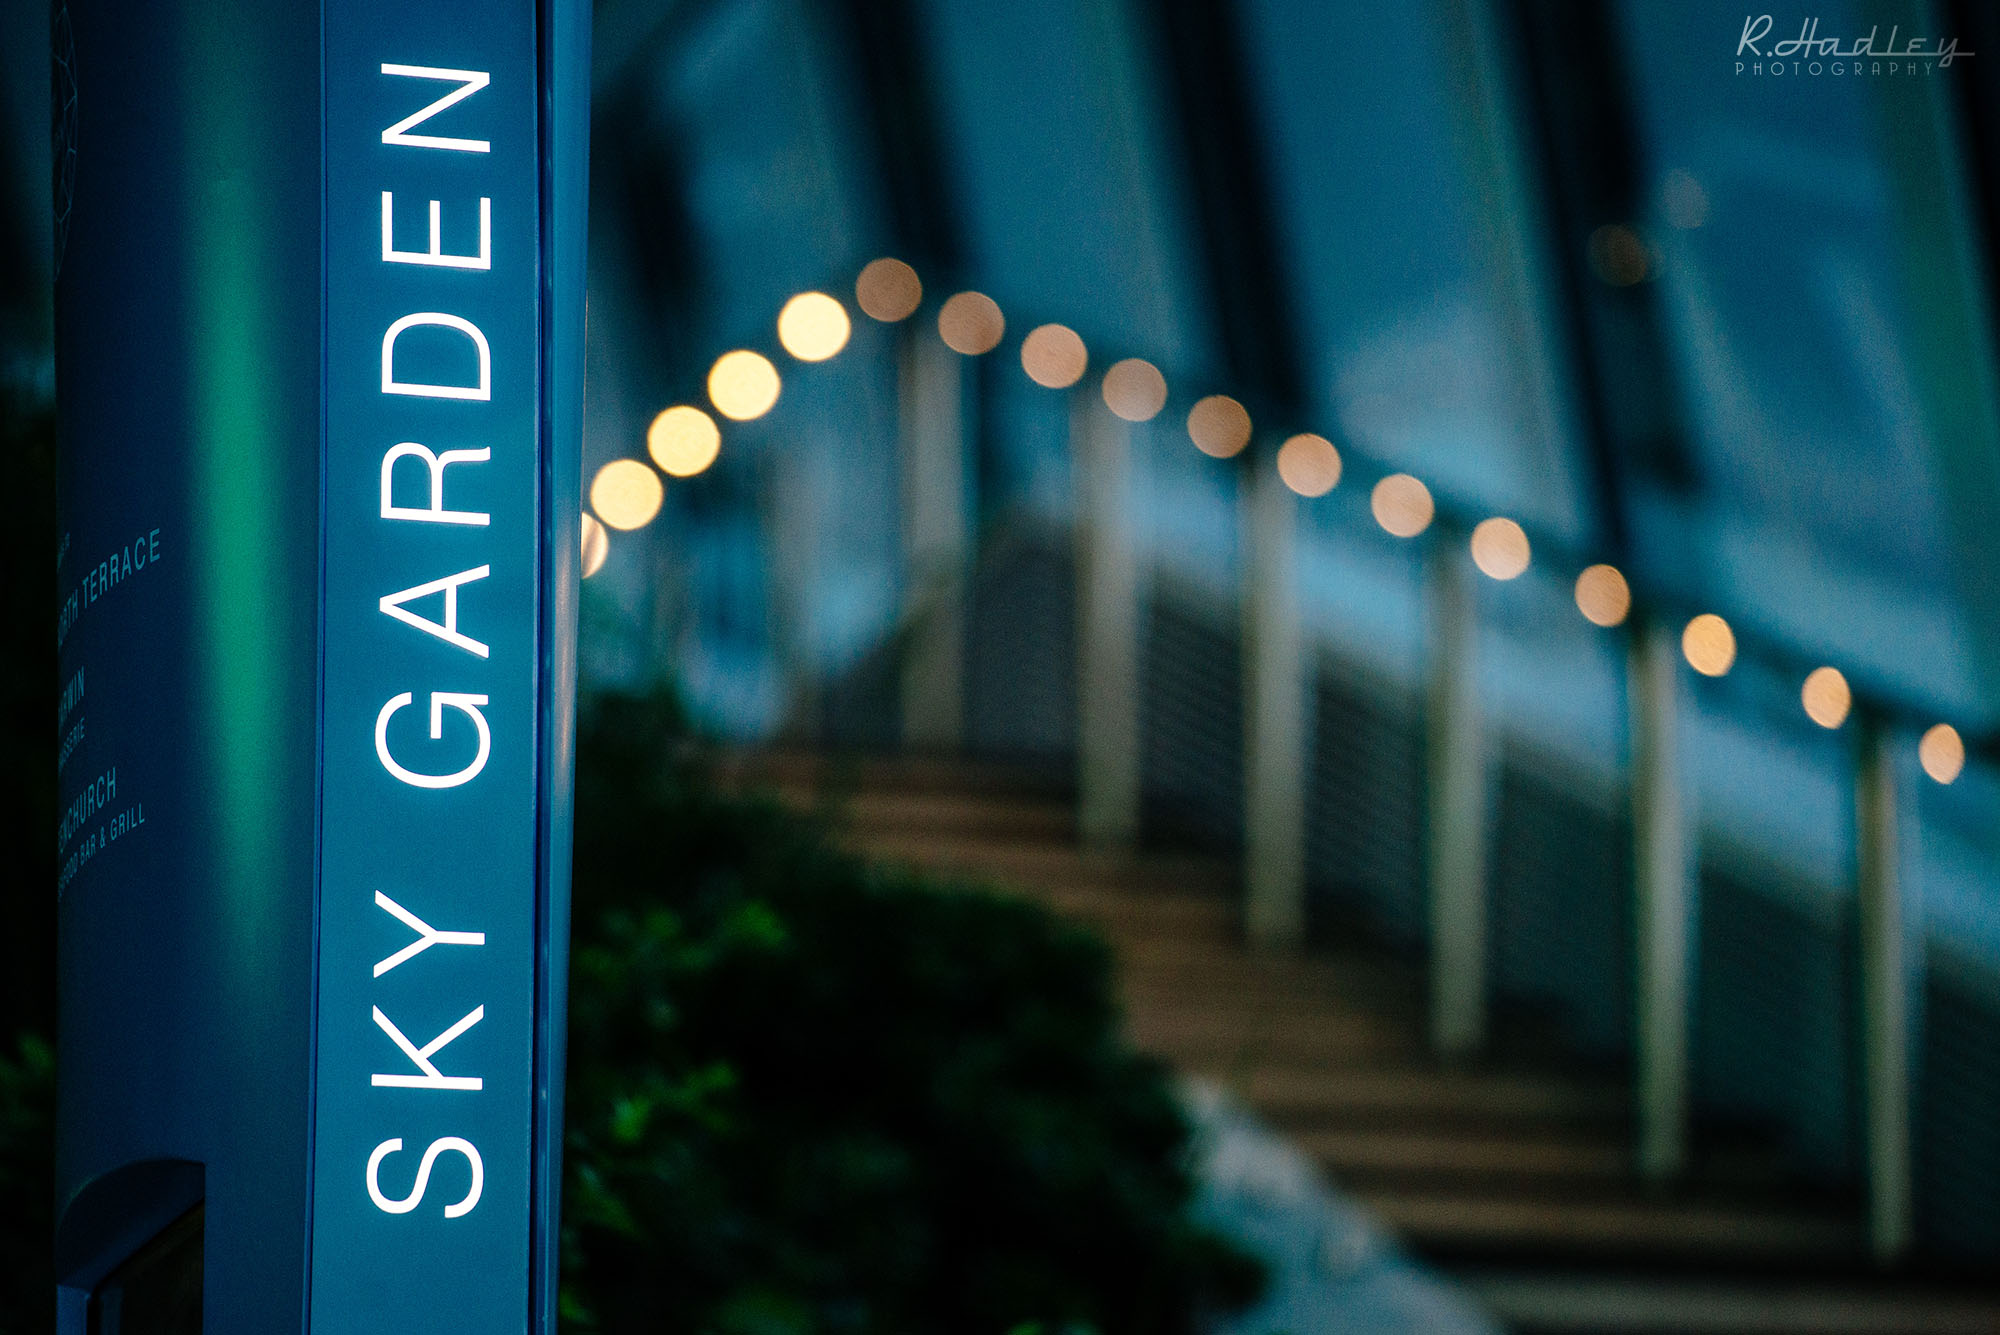 Sky Garden - Corporate Event Photographer in London